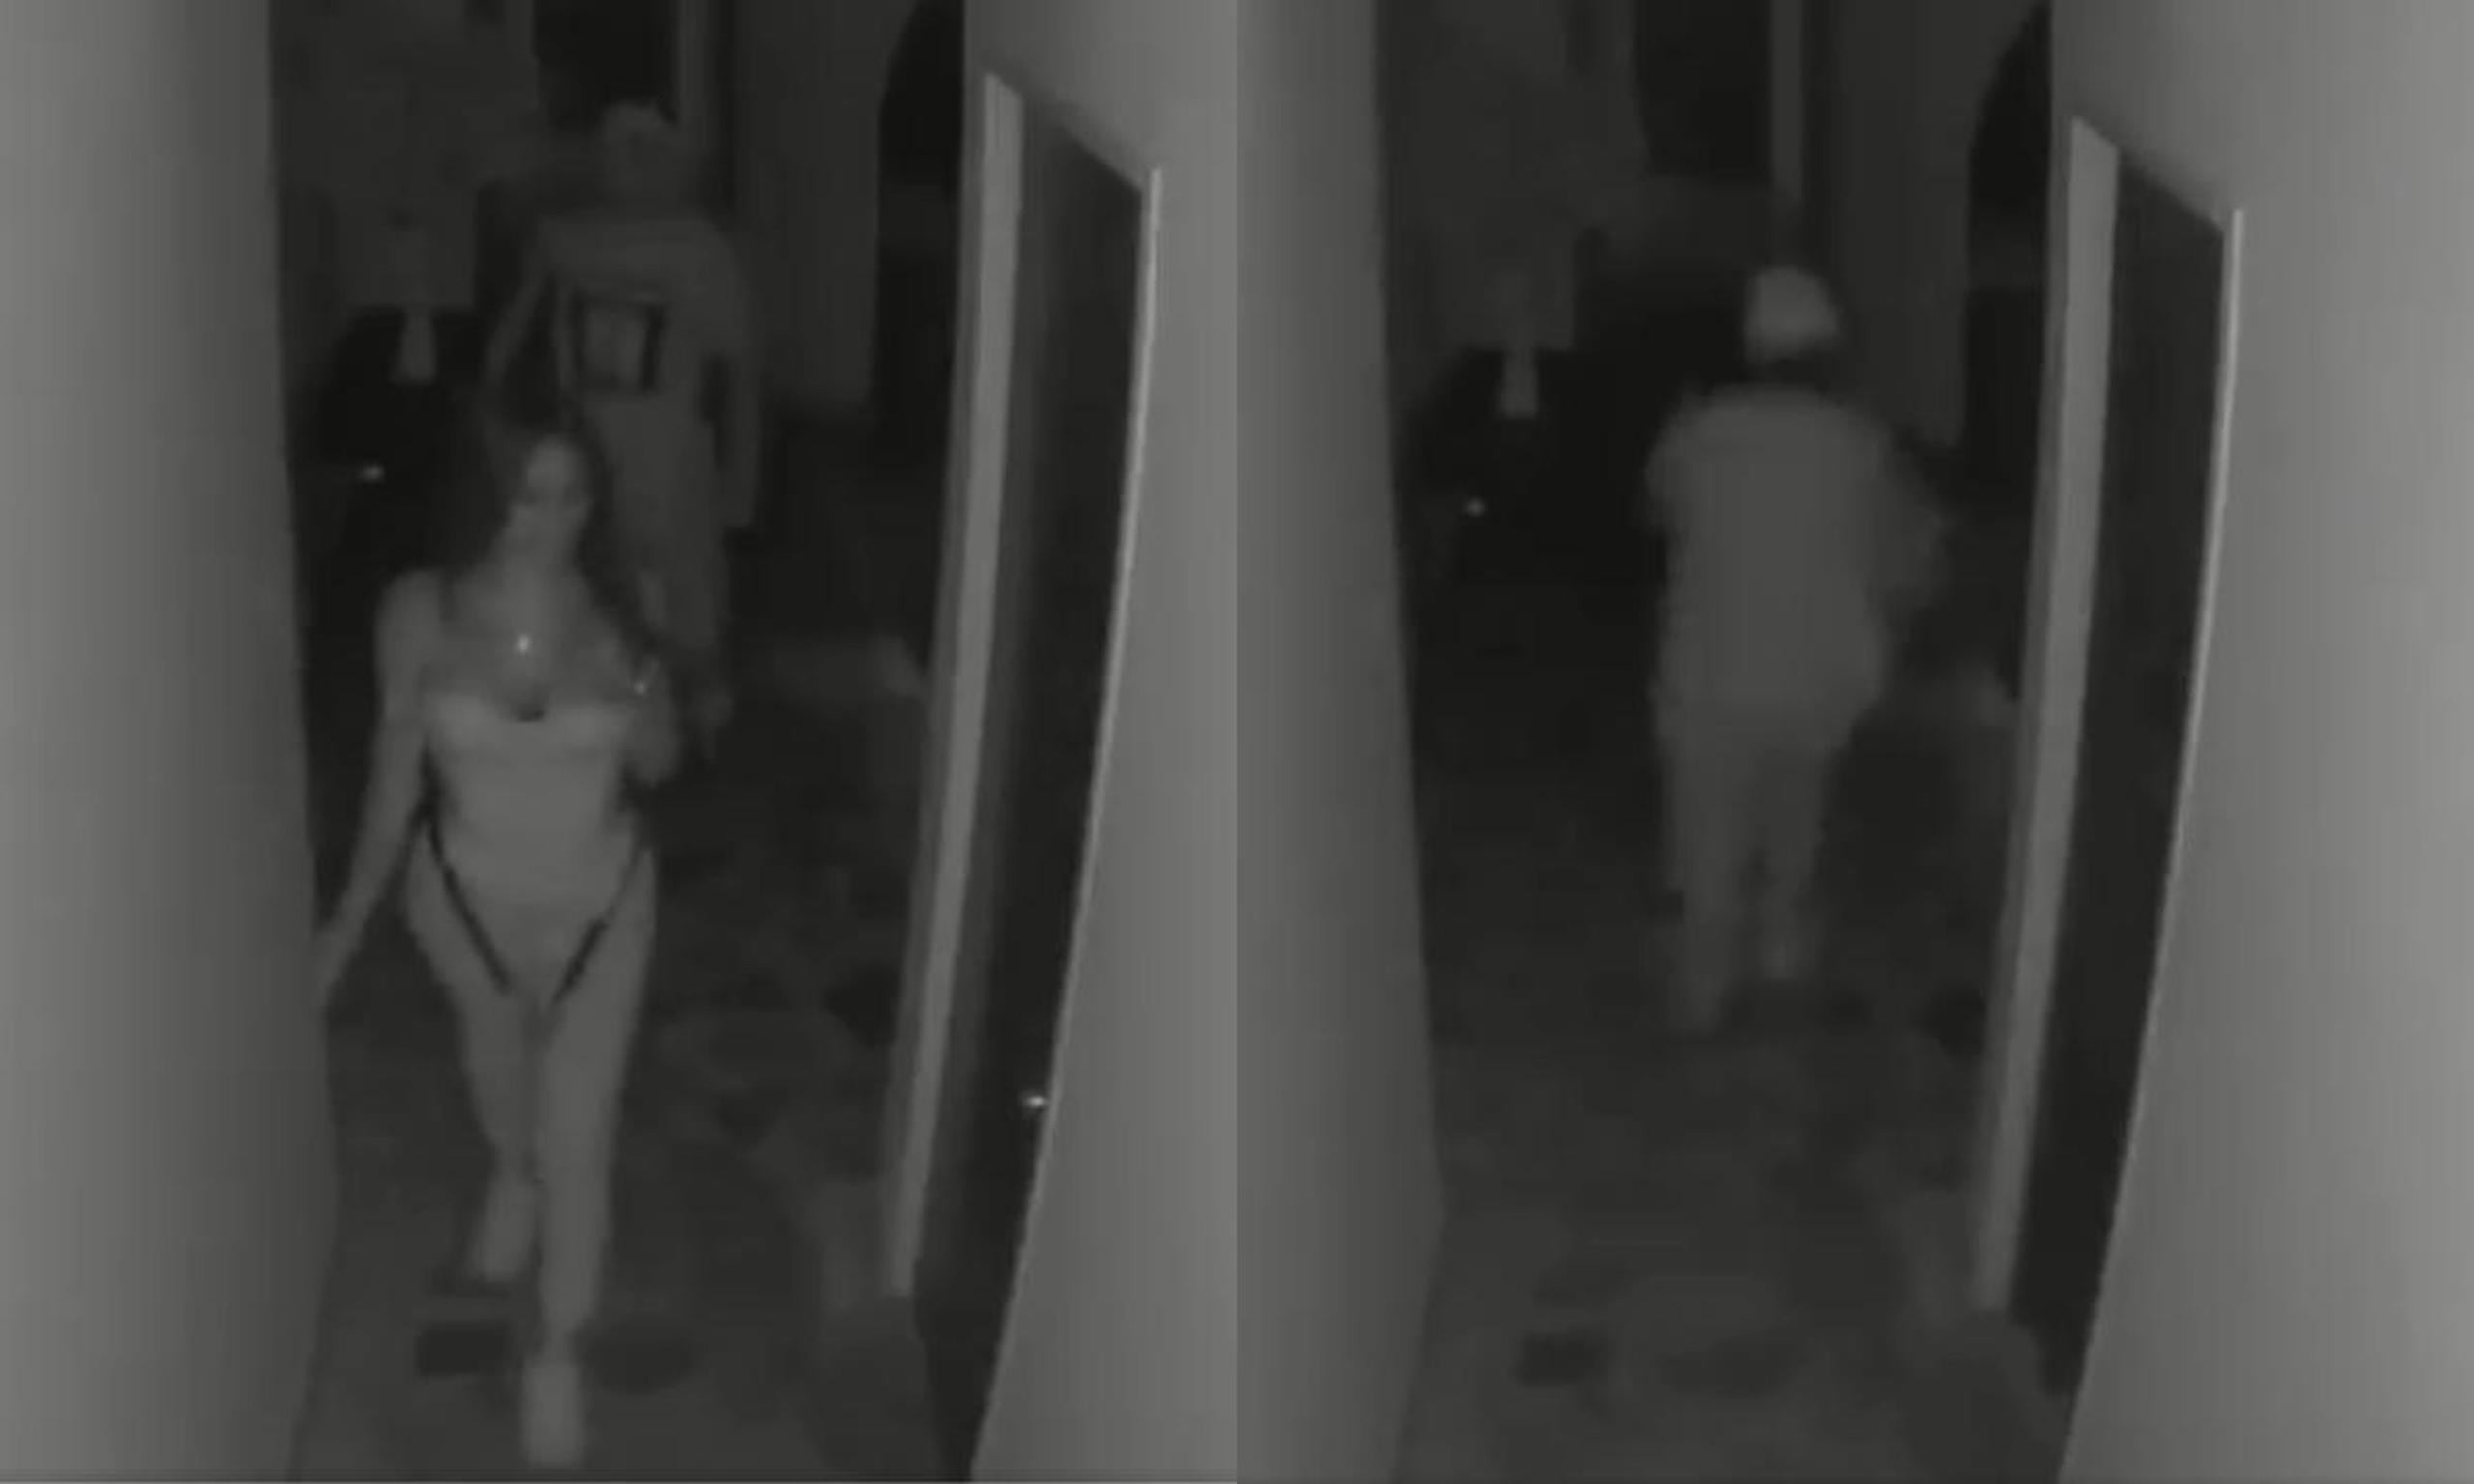 En el video puede verse al hombre caminar tras la víctima y minutos después, cuando huye tras cometer el crimen.